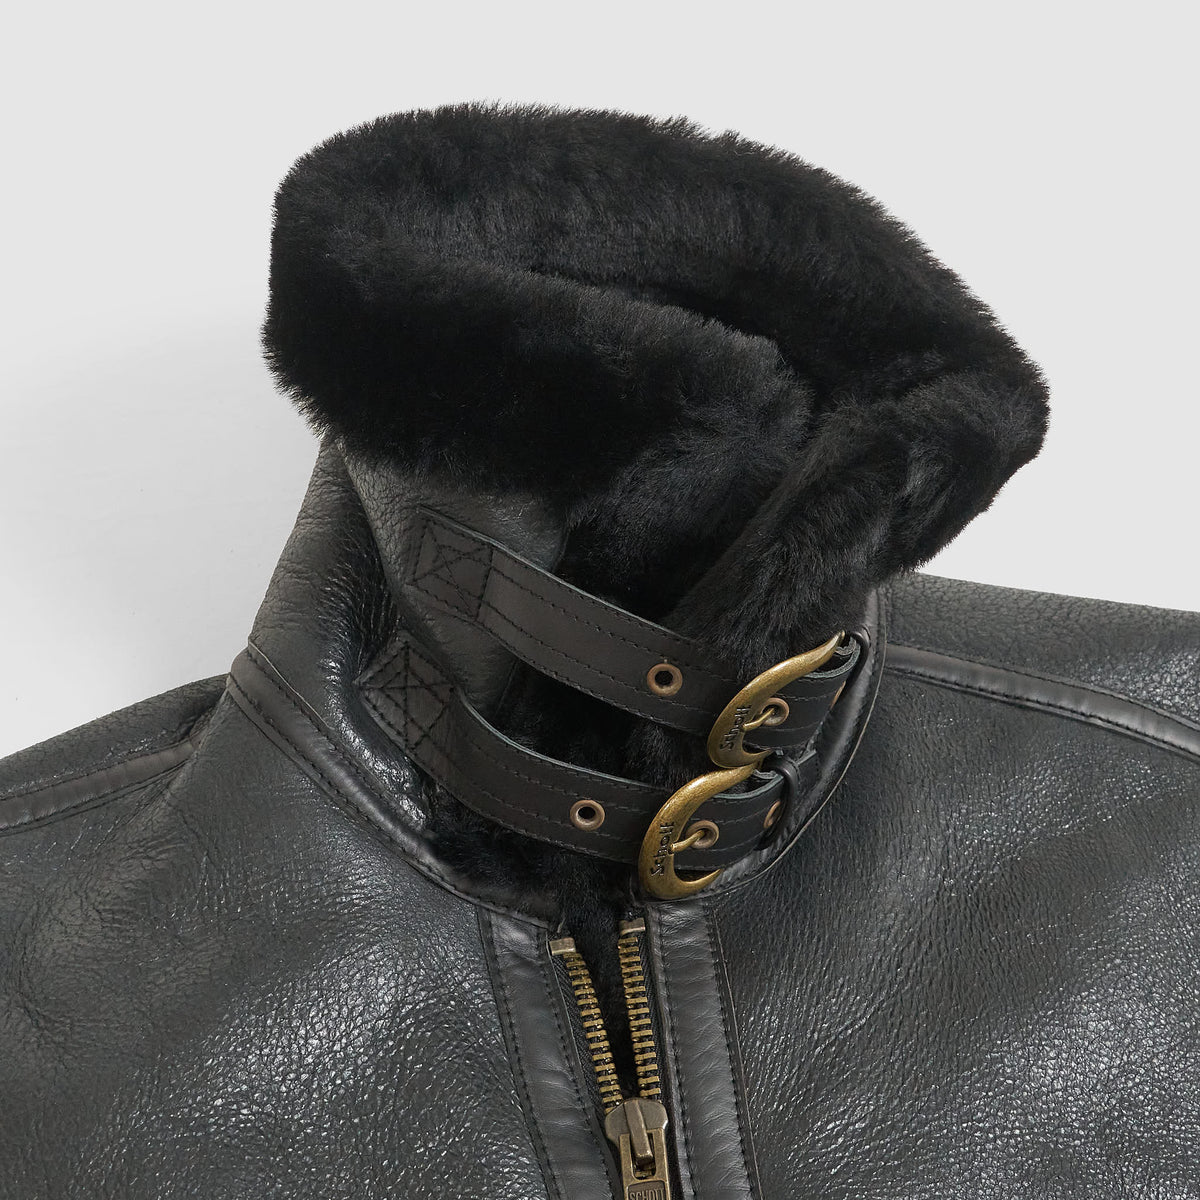 Schott N.Y.C. B-3 Leather Jacket